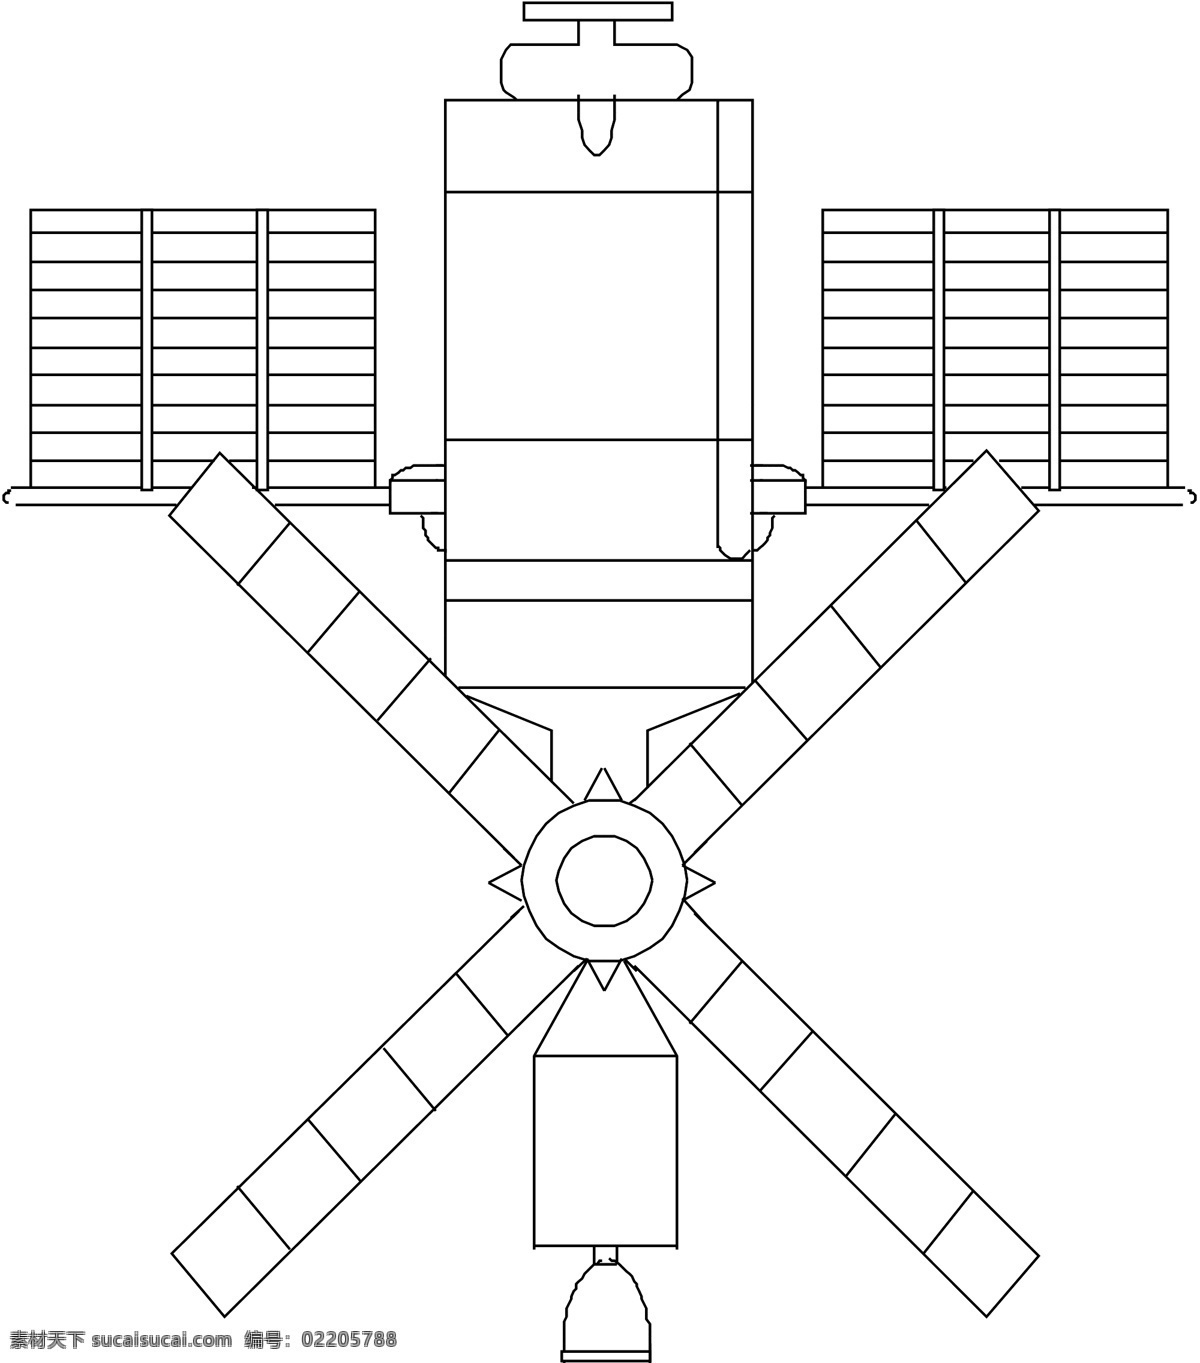 卫星 飞船 商业矢量 矢量风景建筑 矢量下载 卫星飞船 网页矢量 矢量图 其他矢量图